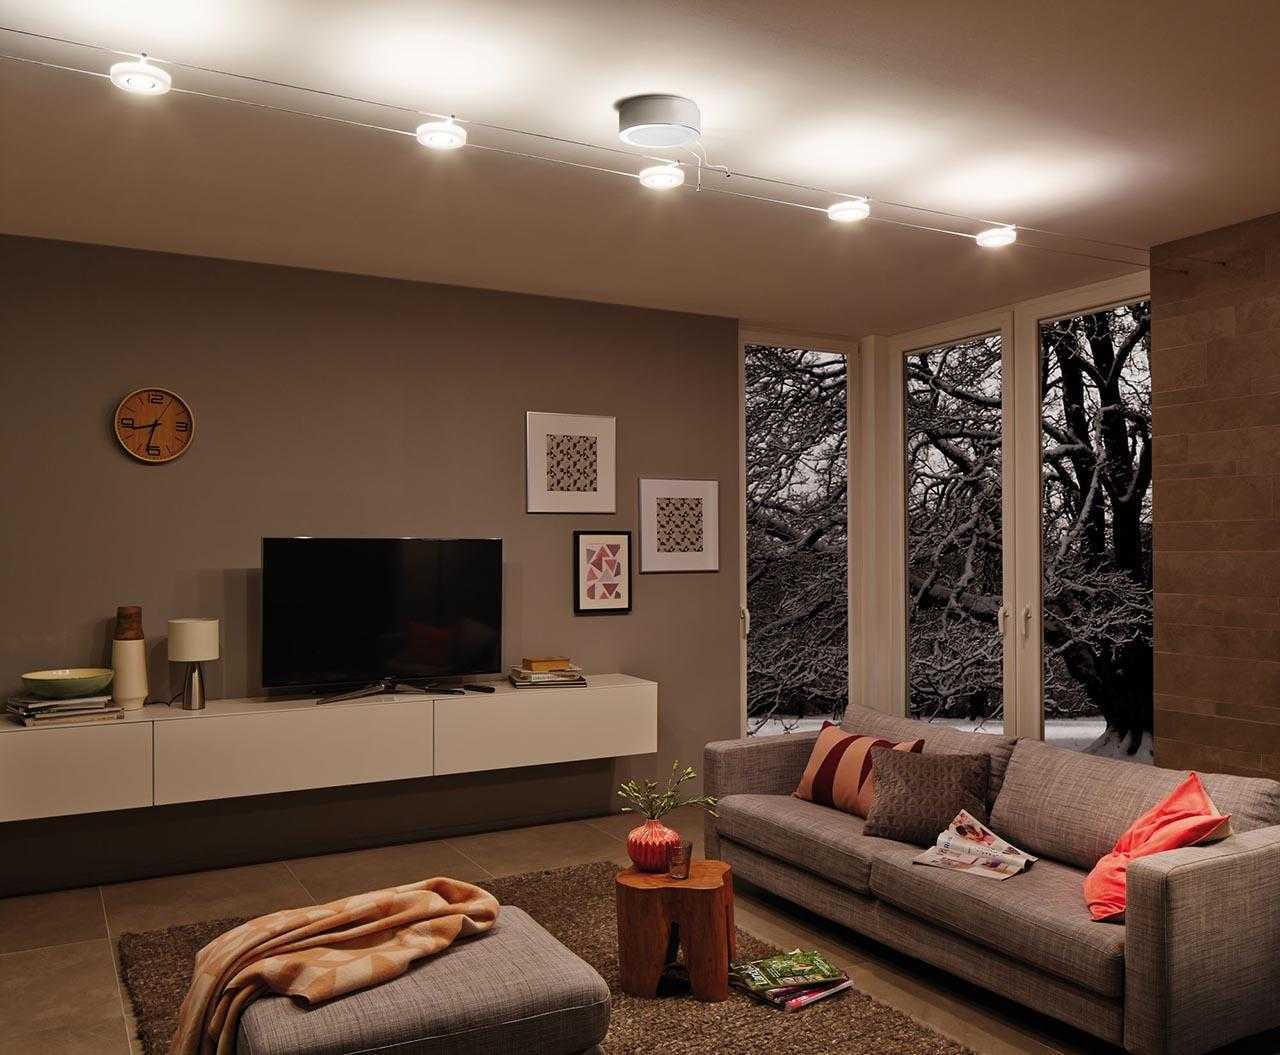 Иногда нам не позволяют потолочные лампы, вентиляторы, осветительные приборы или другие потолочные элементы, которые не разрешают расположить проектор